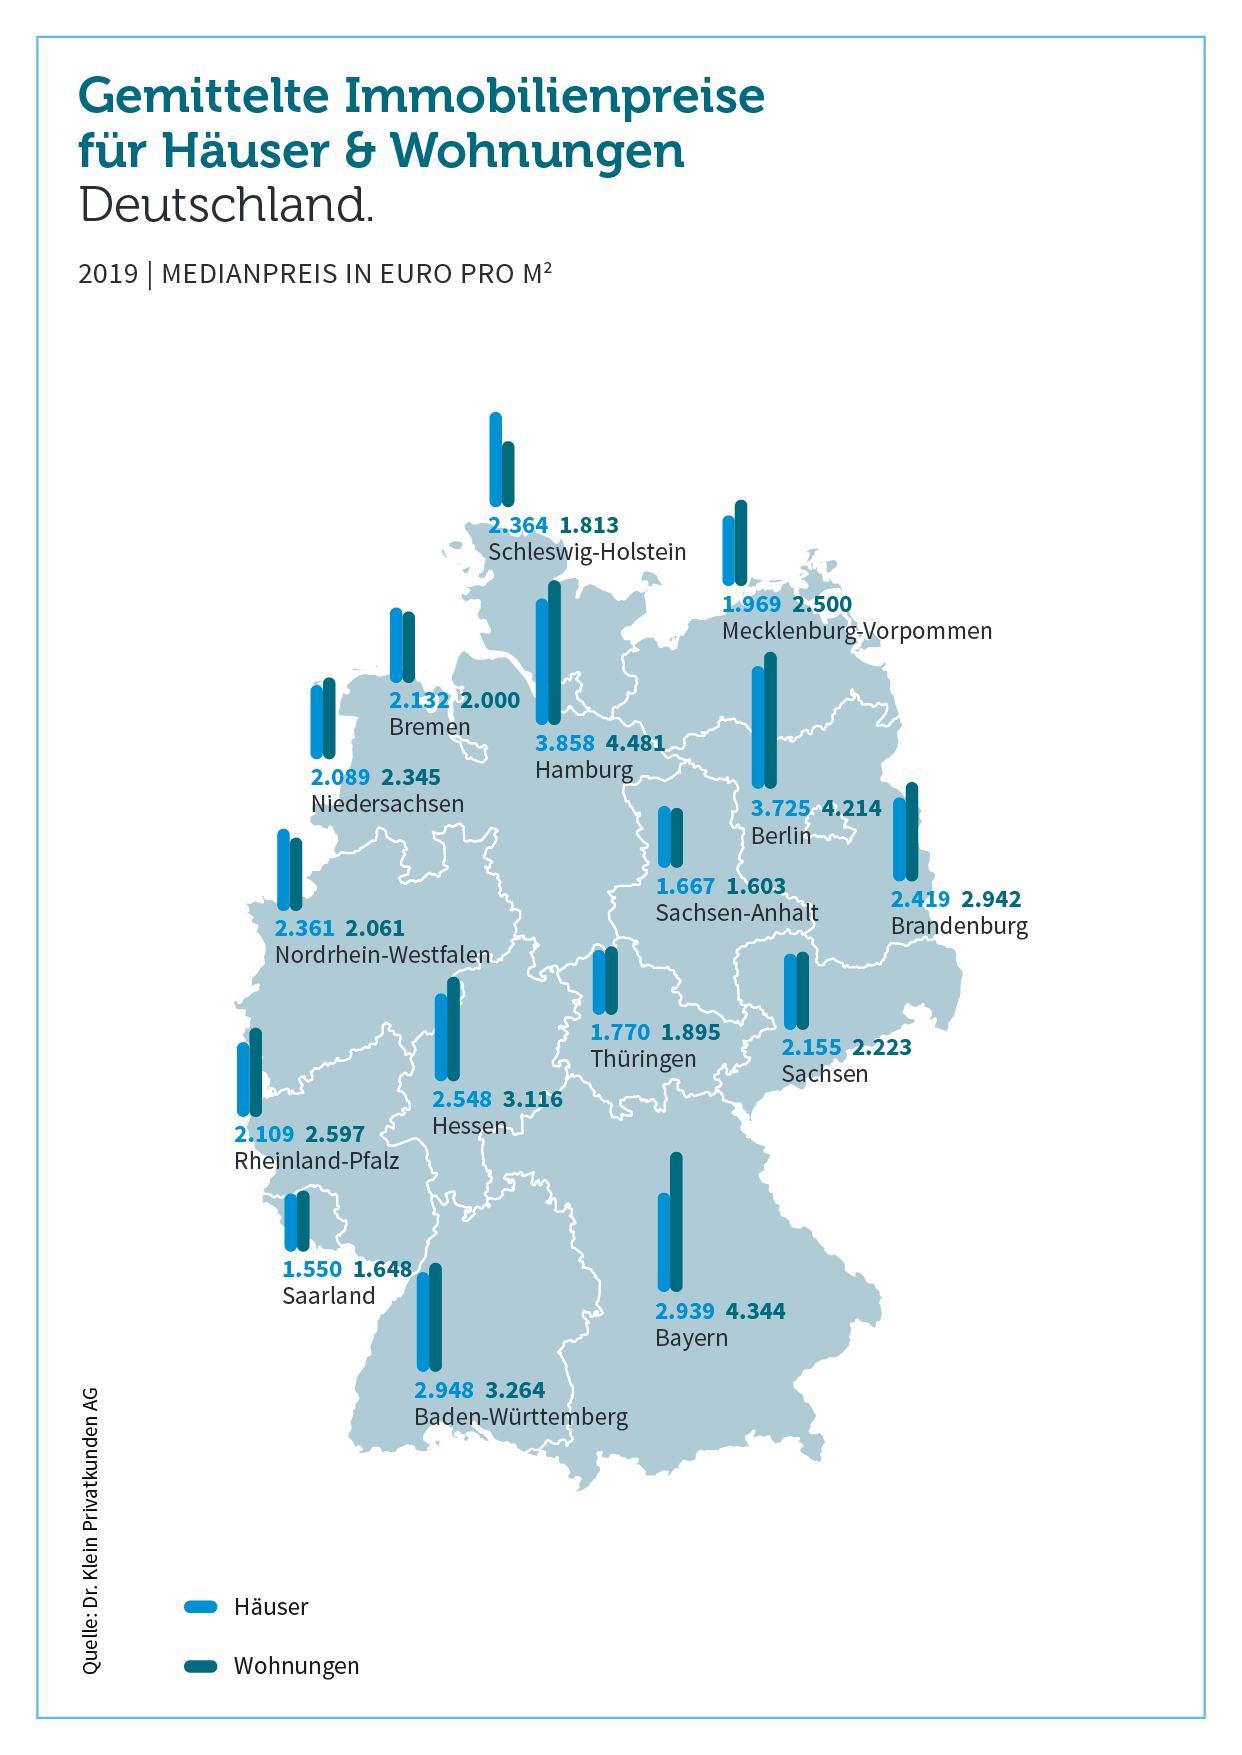 immobilienpreise-haeuser-wohnungen-2019-2009.png